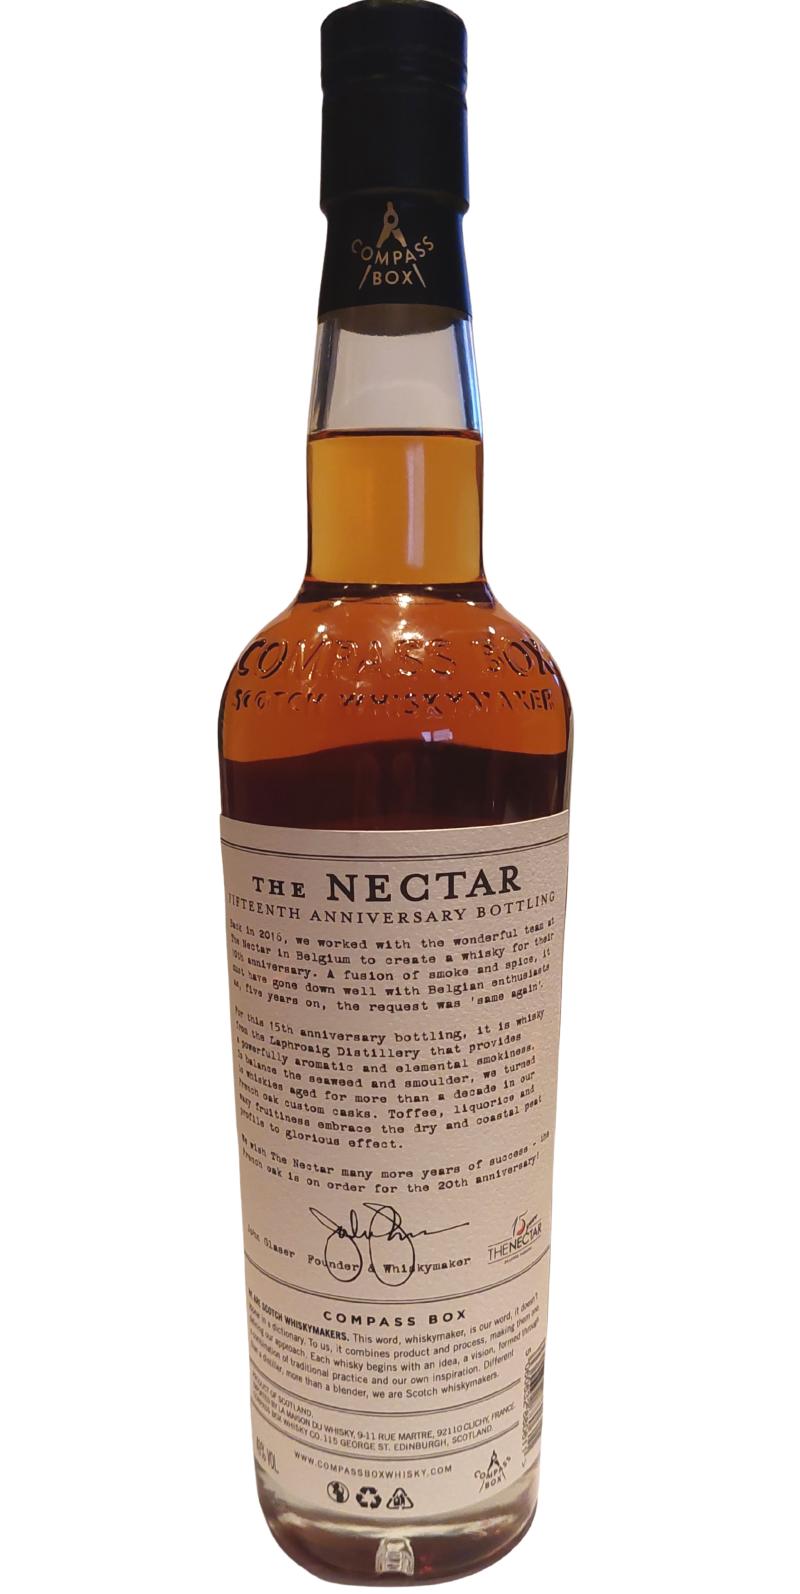 Blended Malt Scotch Whisky The Nectar CB